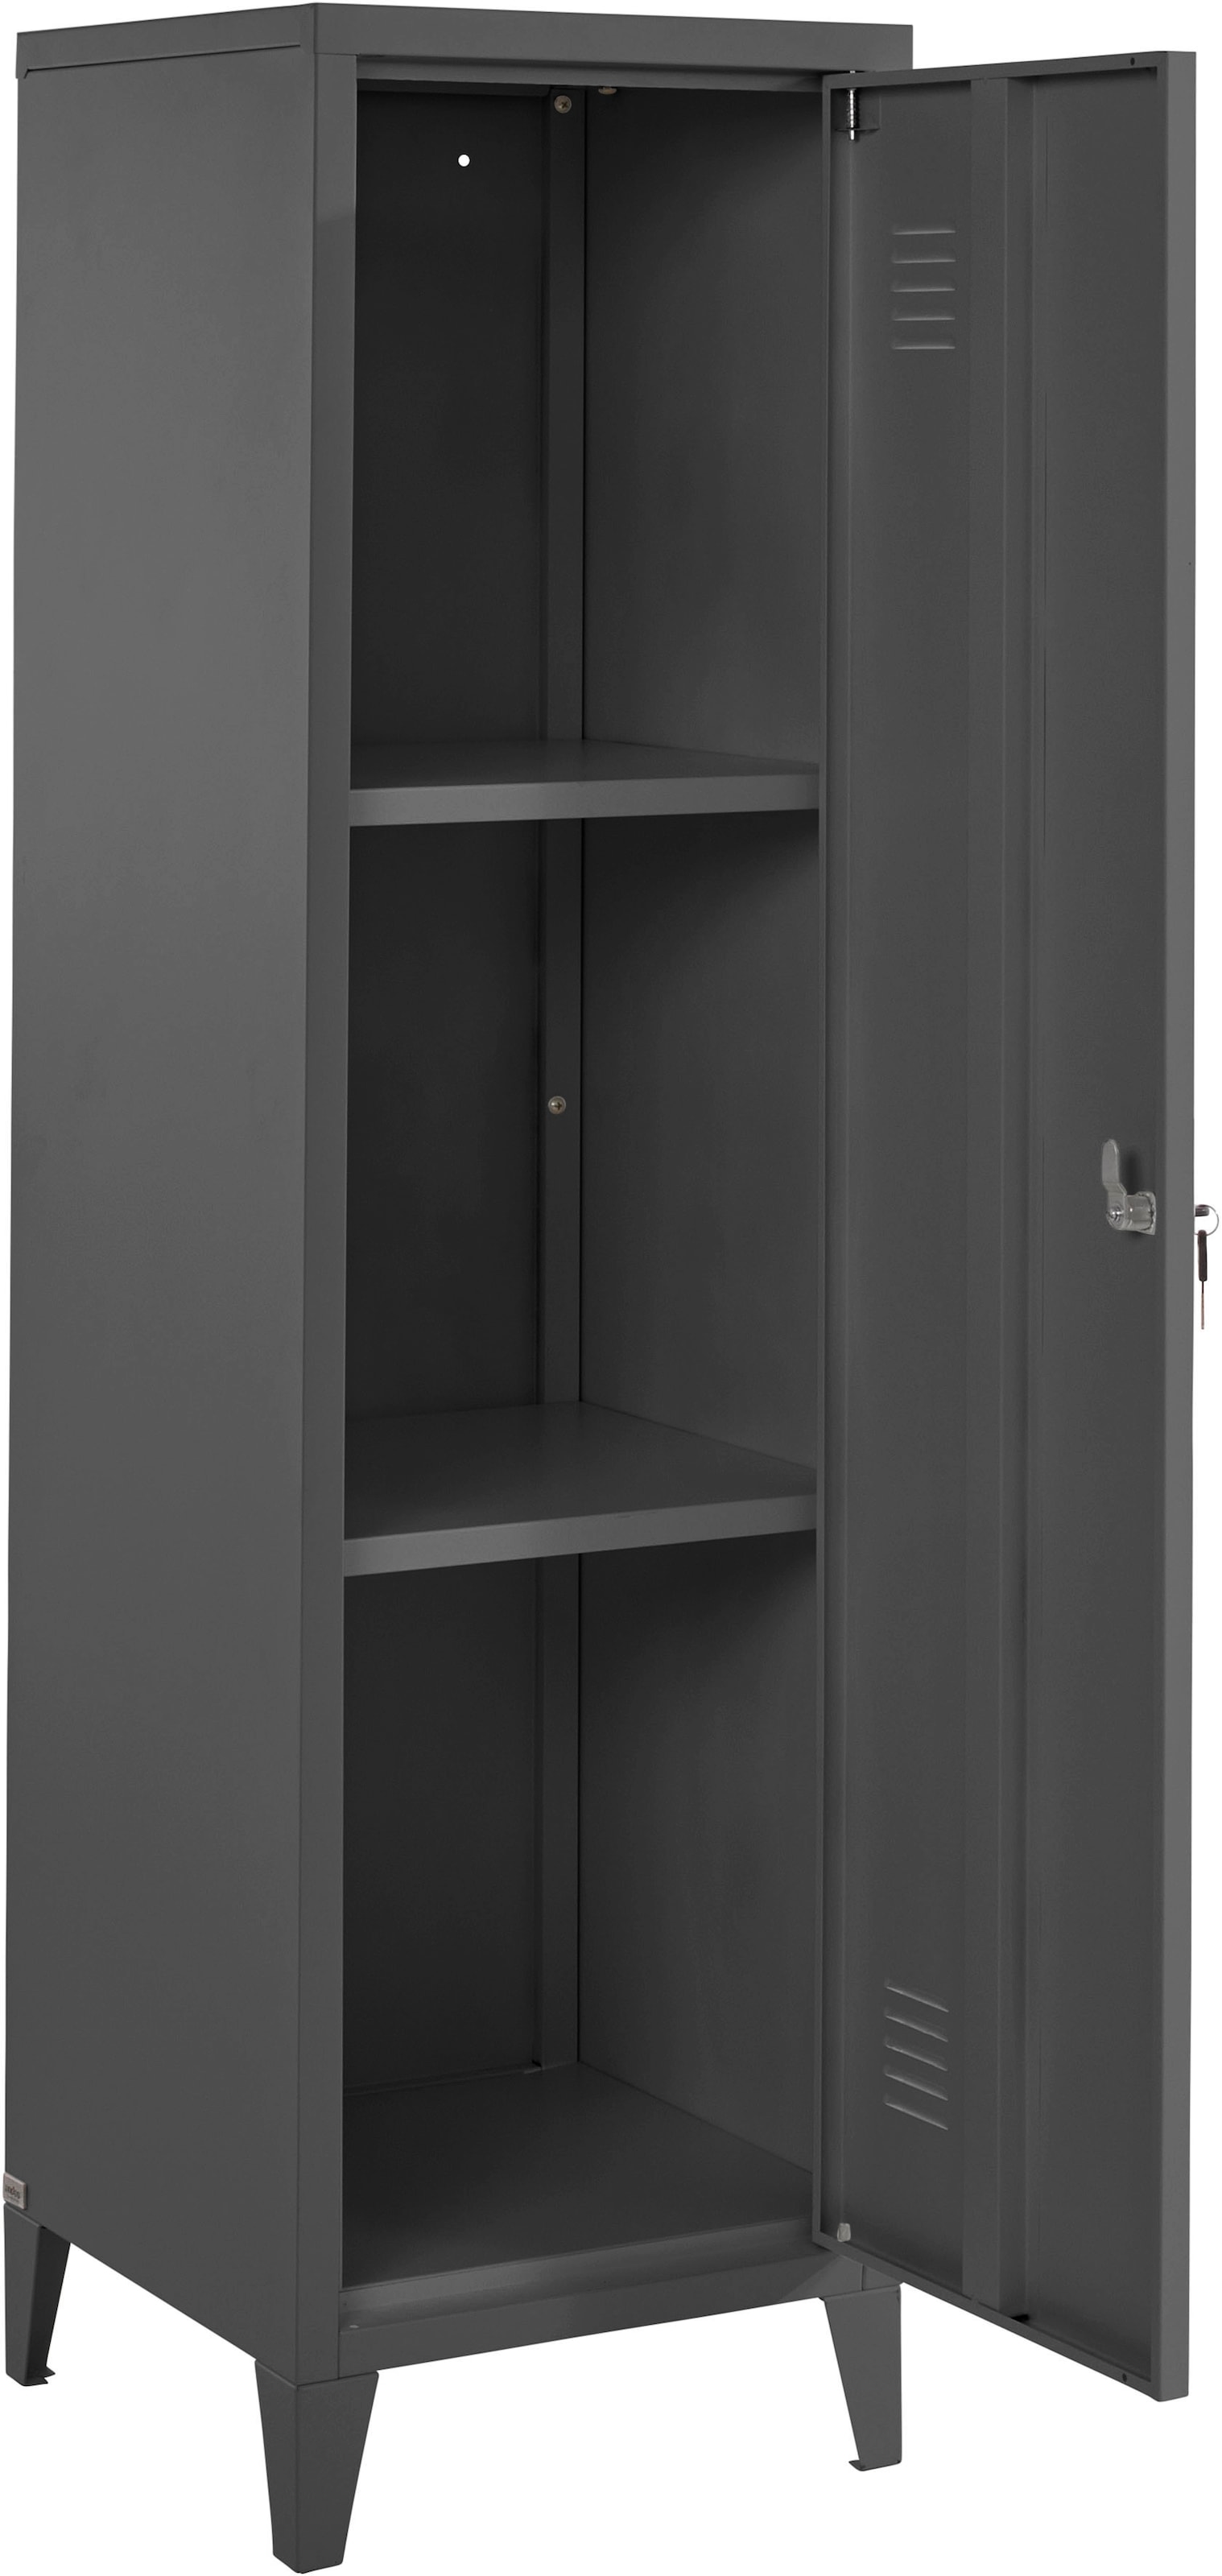 andas Midischrank »Jensjorg«, Midischrank aus Metall, 2 x Einlegeböden hinter der Tür, Höhe 137 cm